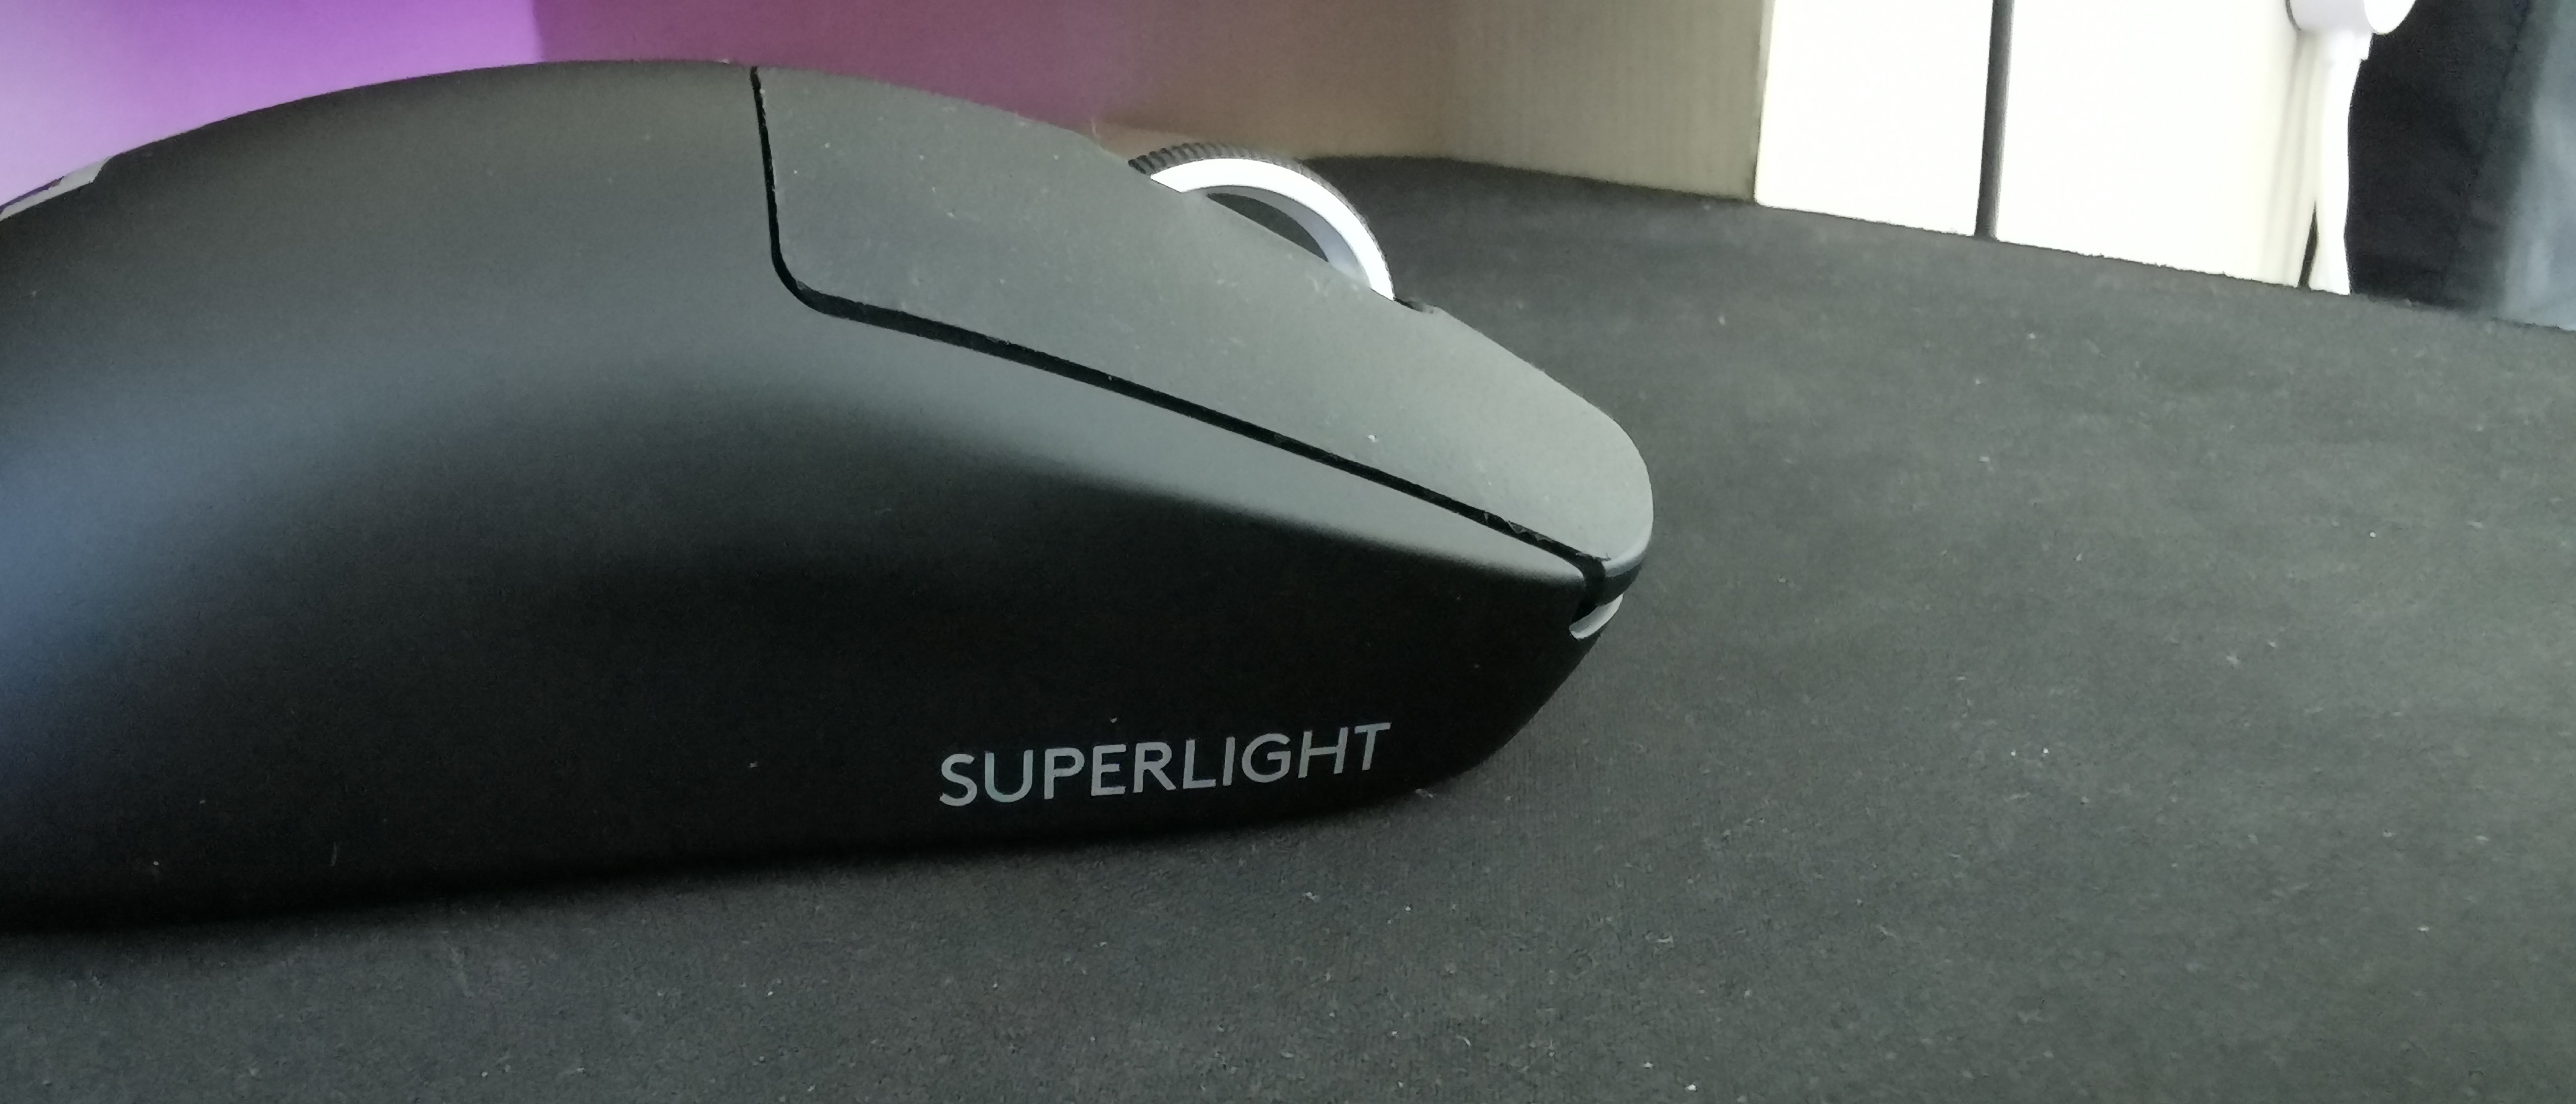 Logitech G Pro X Superlight : meilleur prix, test et actualités